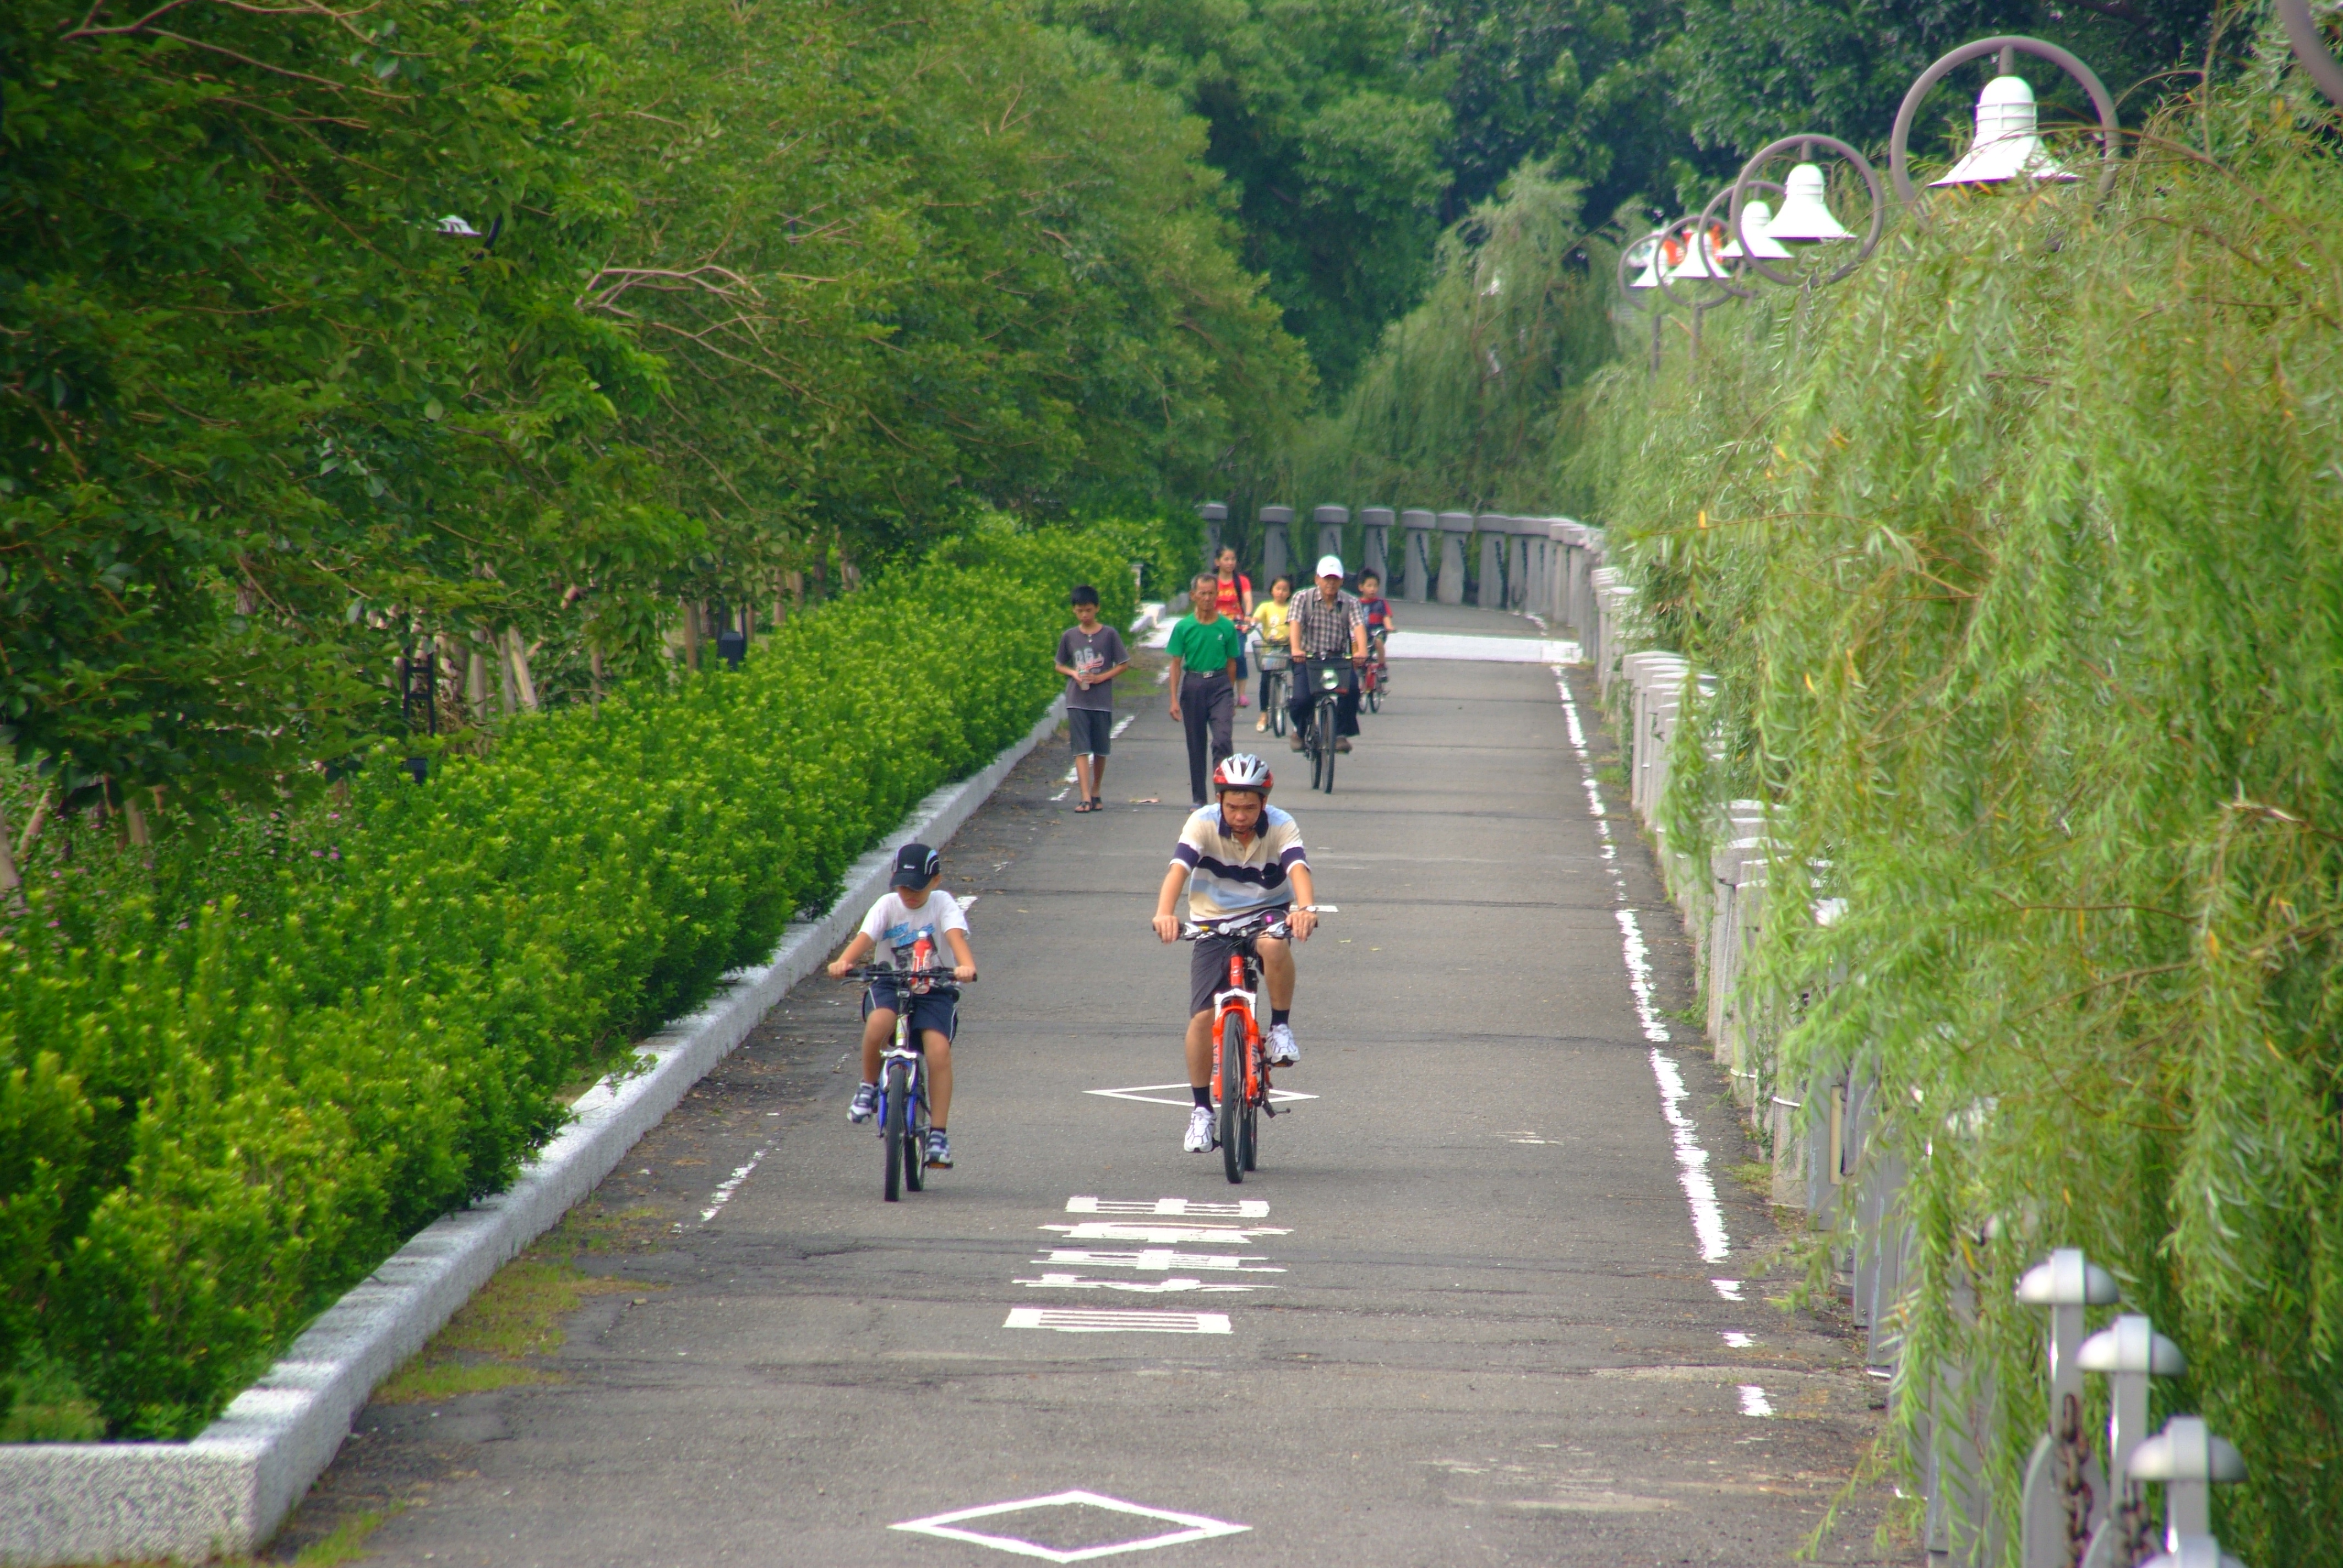 河堤公園自行車道帶動當地民眾運動休憩的風潮。(圖/鮑忠暉攝)